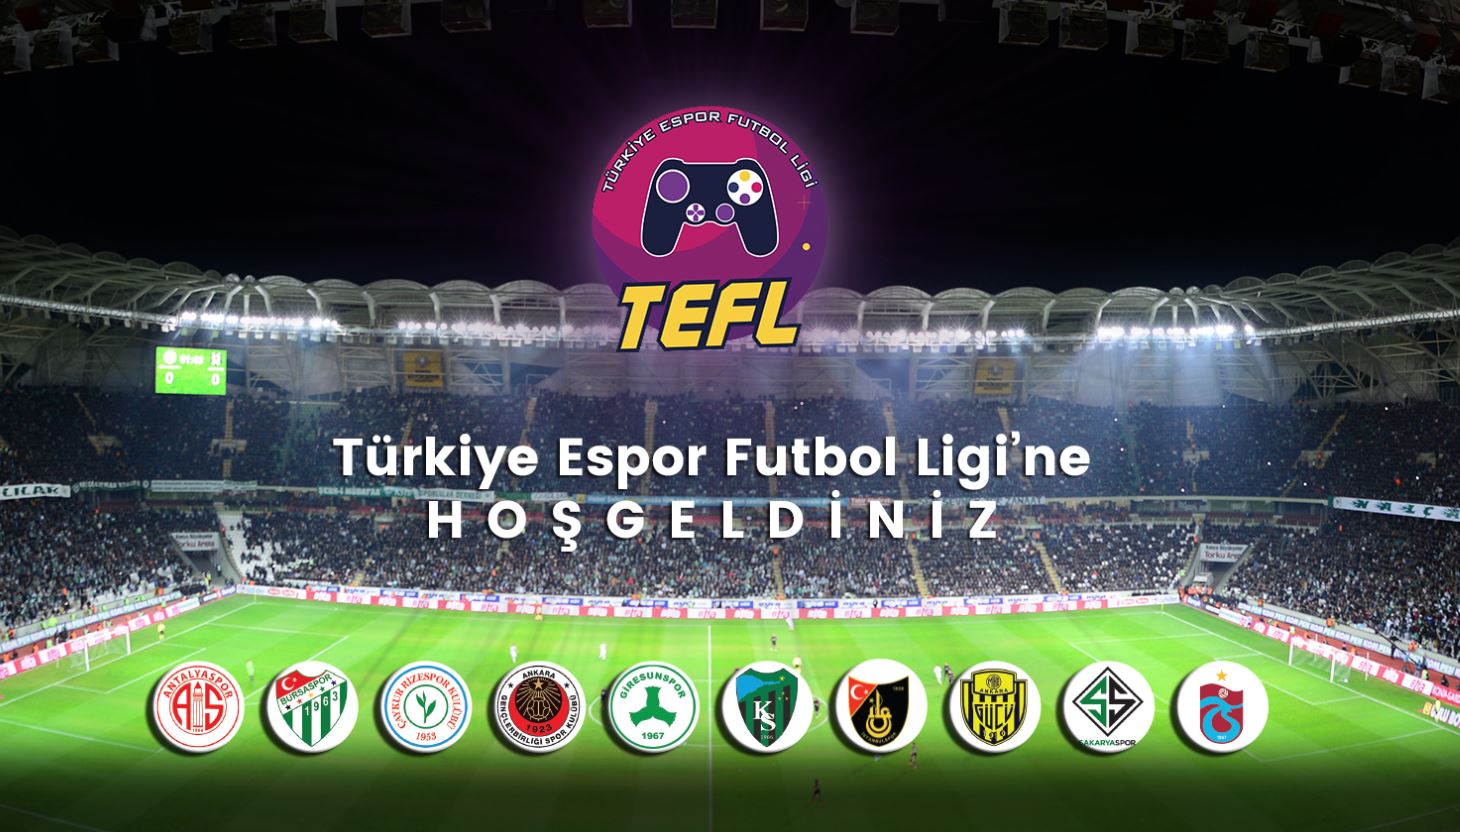 Türkiye Espor Futbol Ligi, Beşiktaş Esports'un lige katıldığını duyurdu